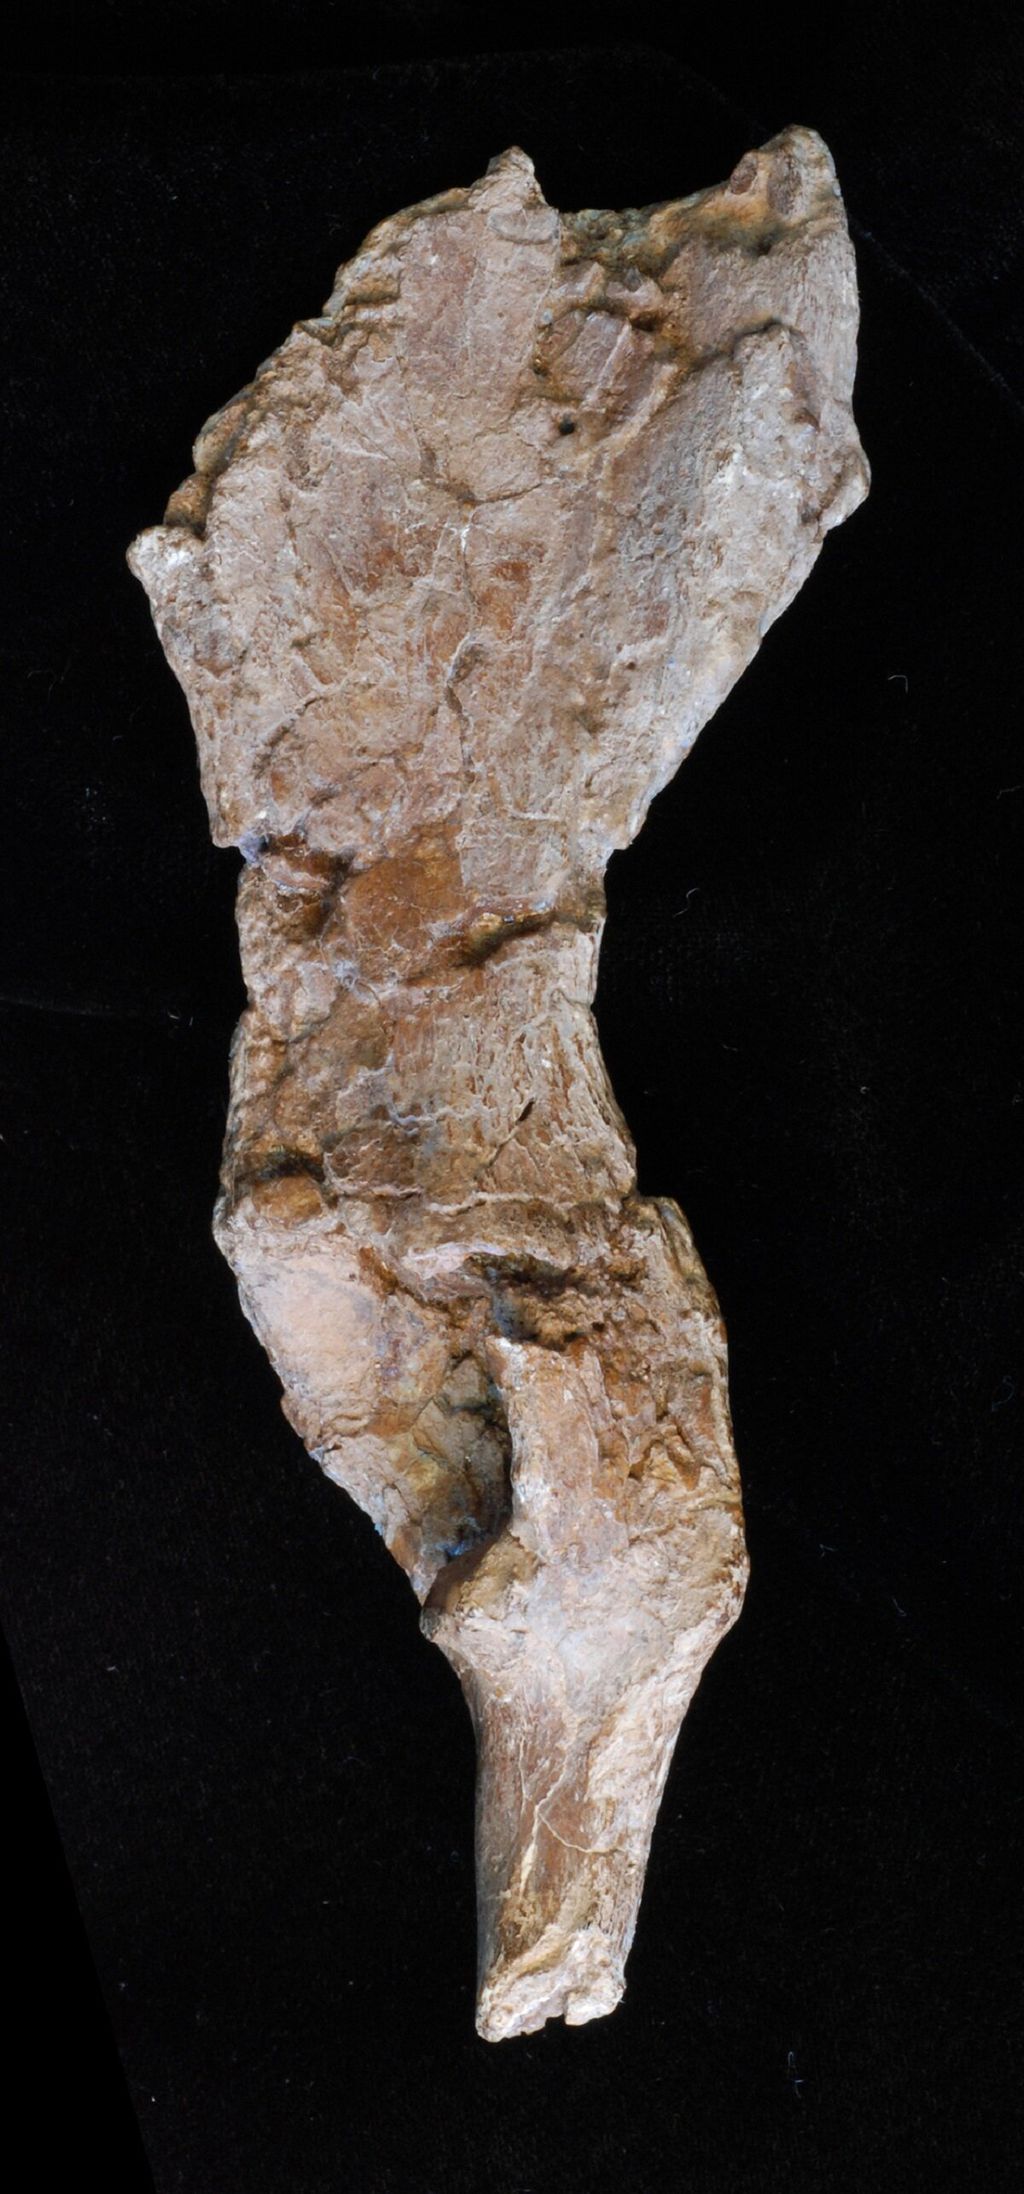 A pélvis descoberta na Europa Central, registrada por especialistas da Universidade do Missouri: osso indica que ancestral humano tinha capacidades diferenciadas de locomoção (Imagem: Divulgação/Universidade do Missouri)